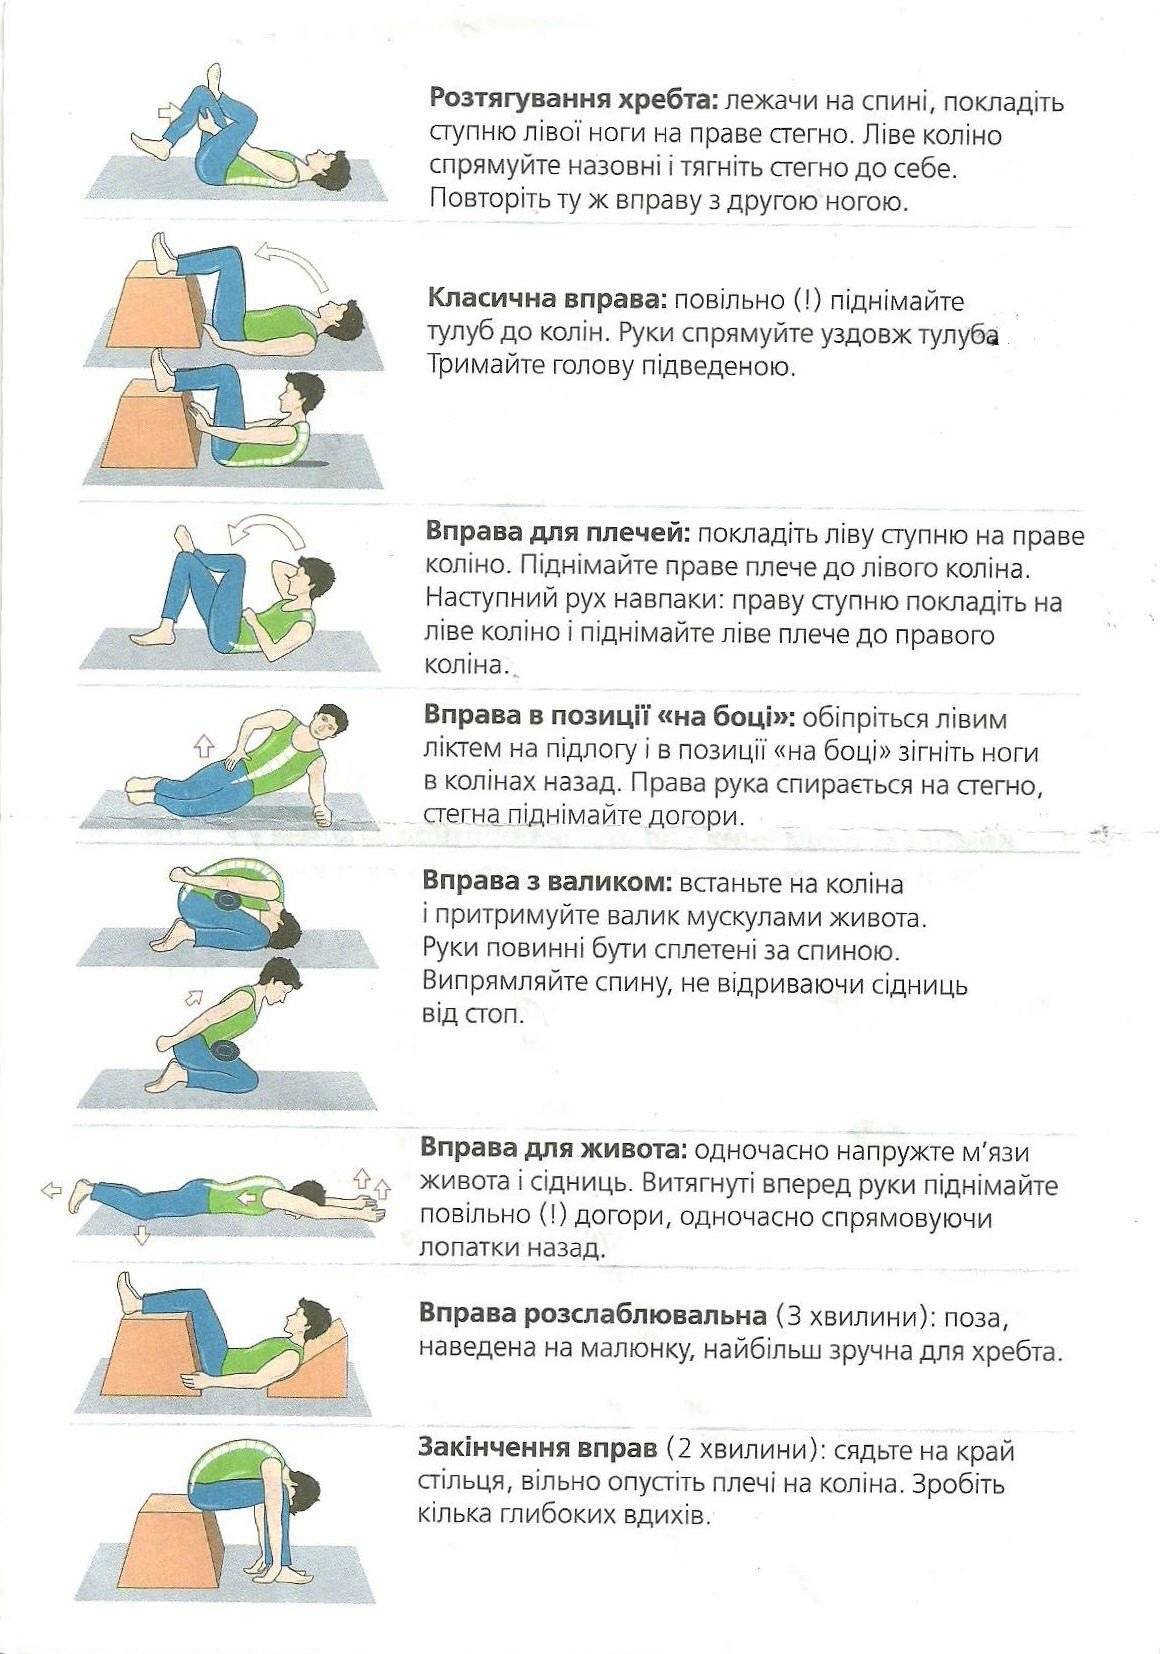 Эффективные упражнения при болях в спине и пояснице